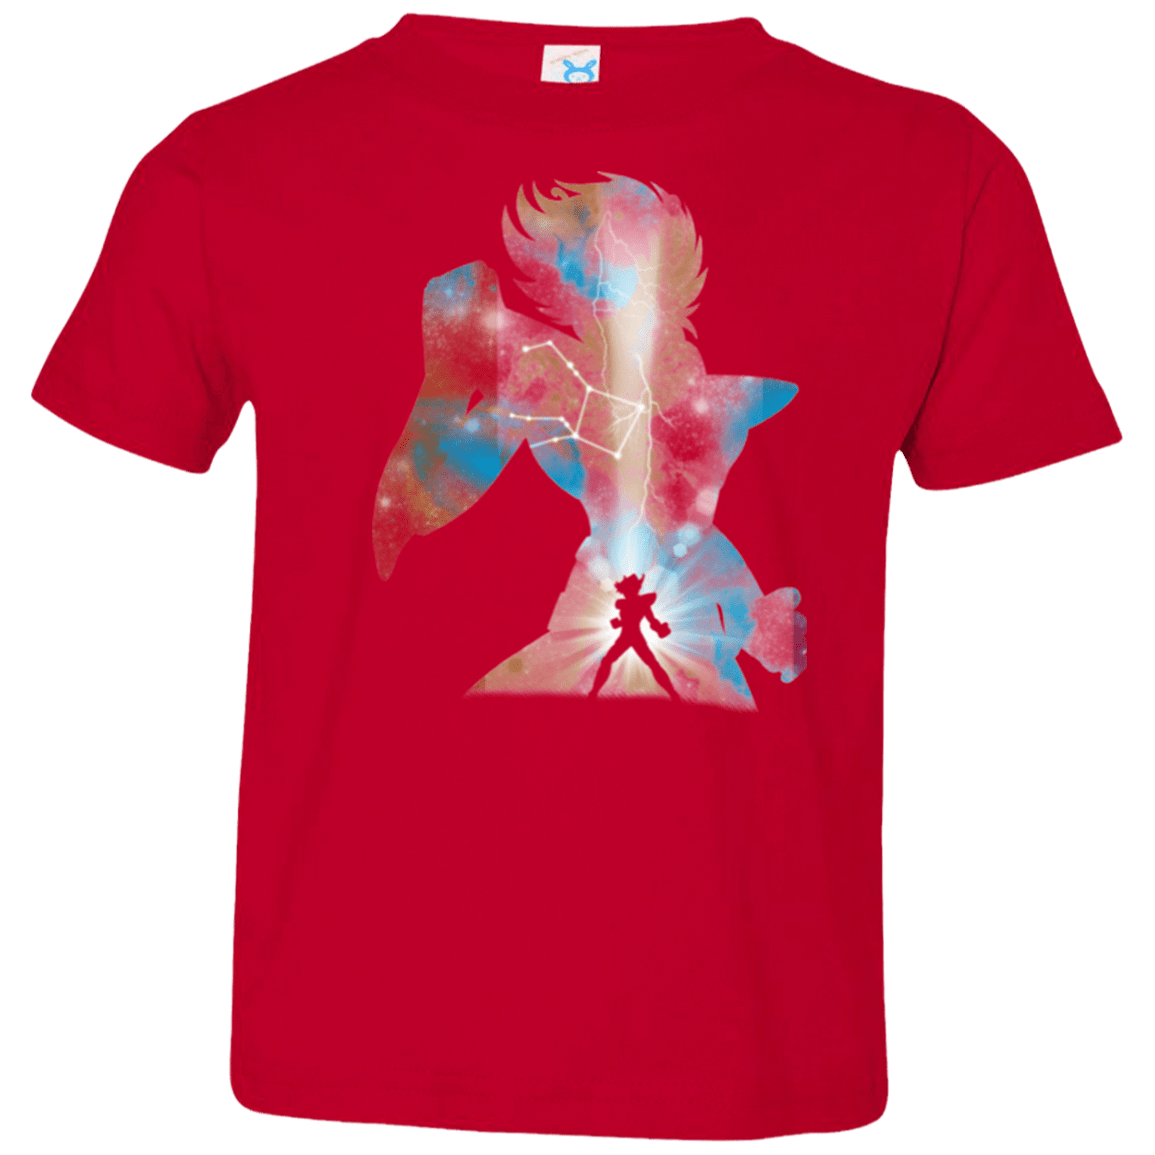 T-Shirts Red / 2T The Pegasus Toddler Premium T-Shirt